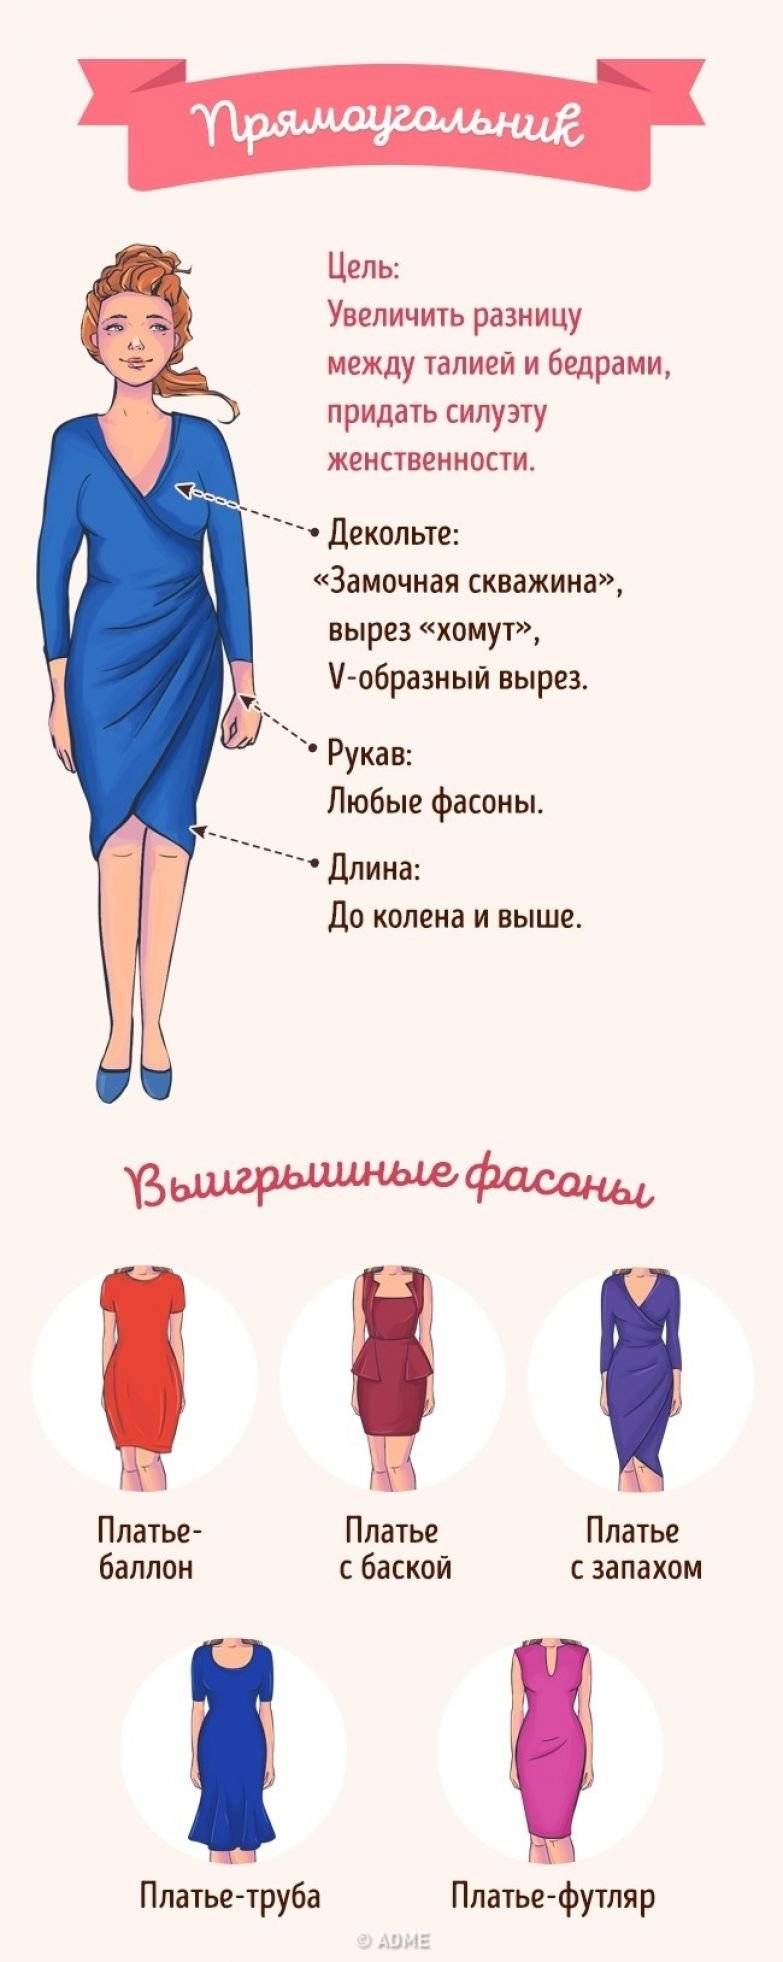 Как легко найти идеальную длину платья и юбки | красиво шить не запретишь!